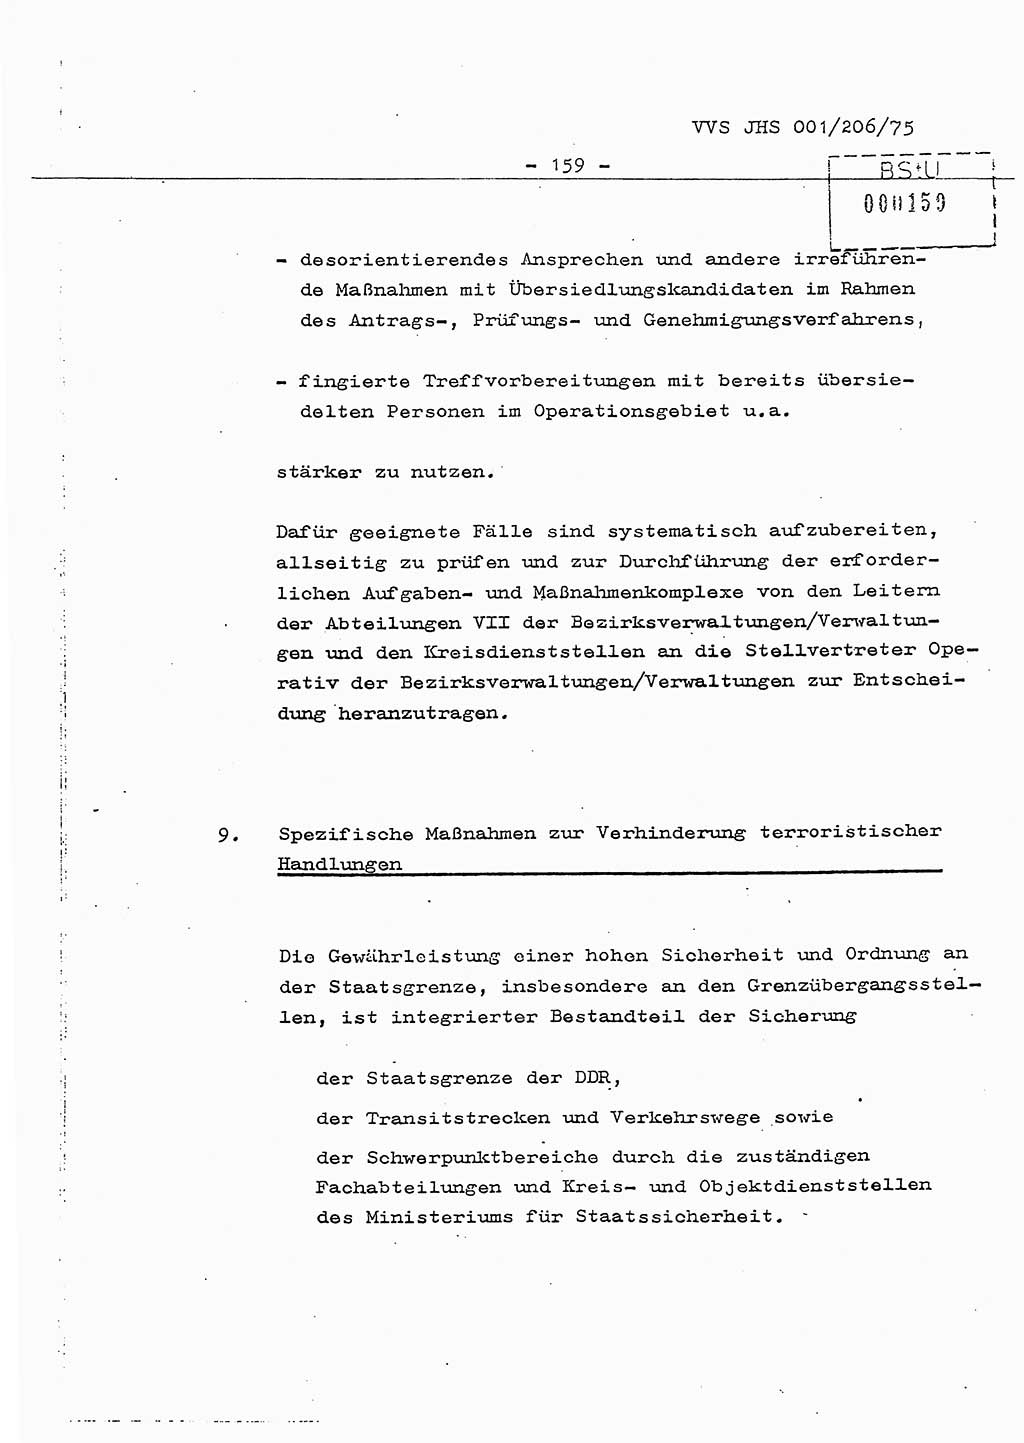 Dissertation Generalmajor Manfred Hummitzsch (Leiter der BV Leipzig), Generalmajor Heinz Fiedler (HA Ⅵ), Oberst Rolf Fister (HA Ⅸ), Ministerium für Staatssicherheit (MfS) [Deutsche Demokratische Republik (DDR)], Juristische Hochschule (JHS), Vertrauliche Verschlußsache (VVS) 001-206/75, Potsdam 1975, Seite 159 (Diss. MfS DDR JHS VVS 001-206/75 1975, S. 159)